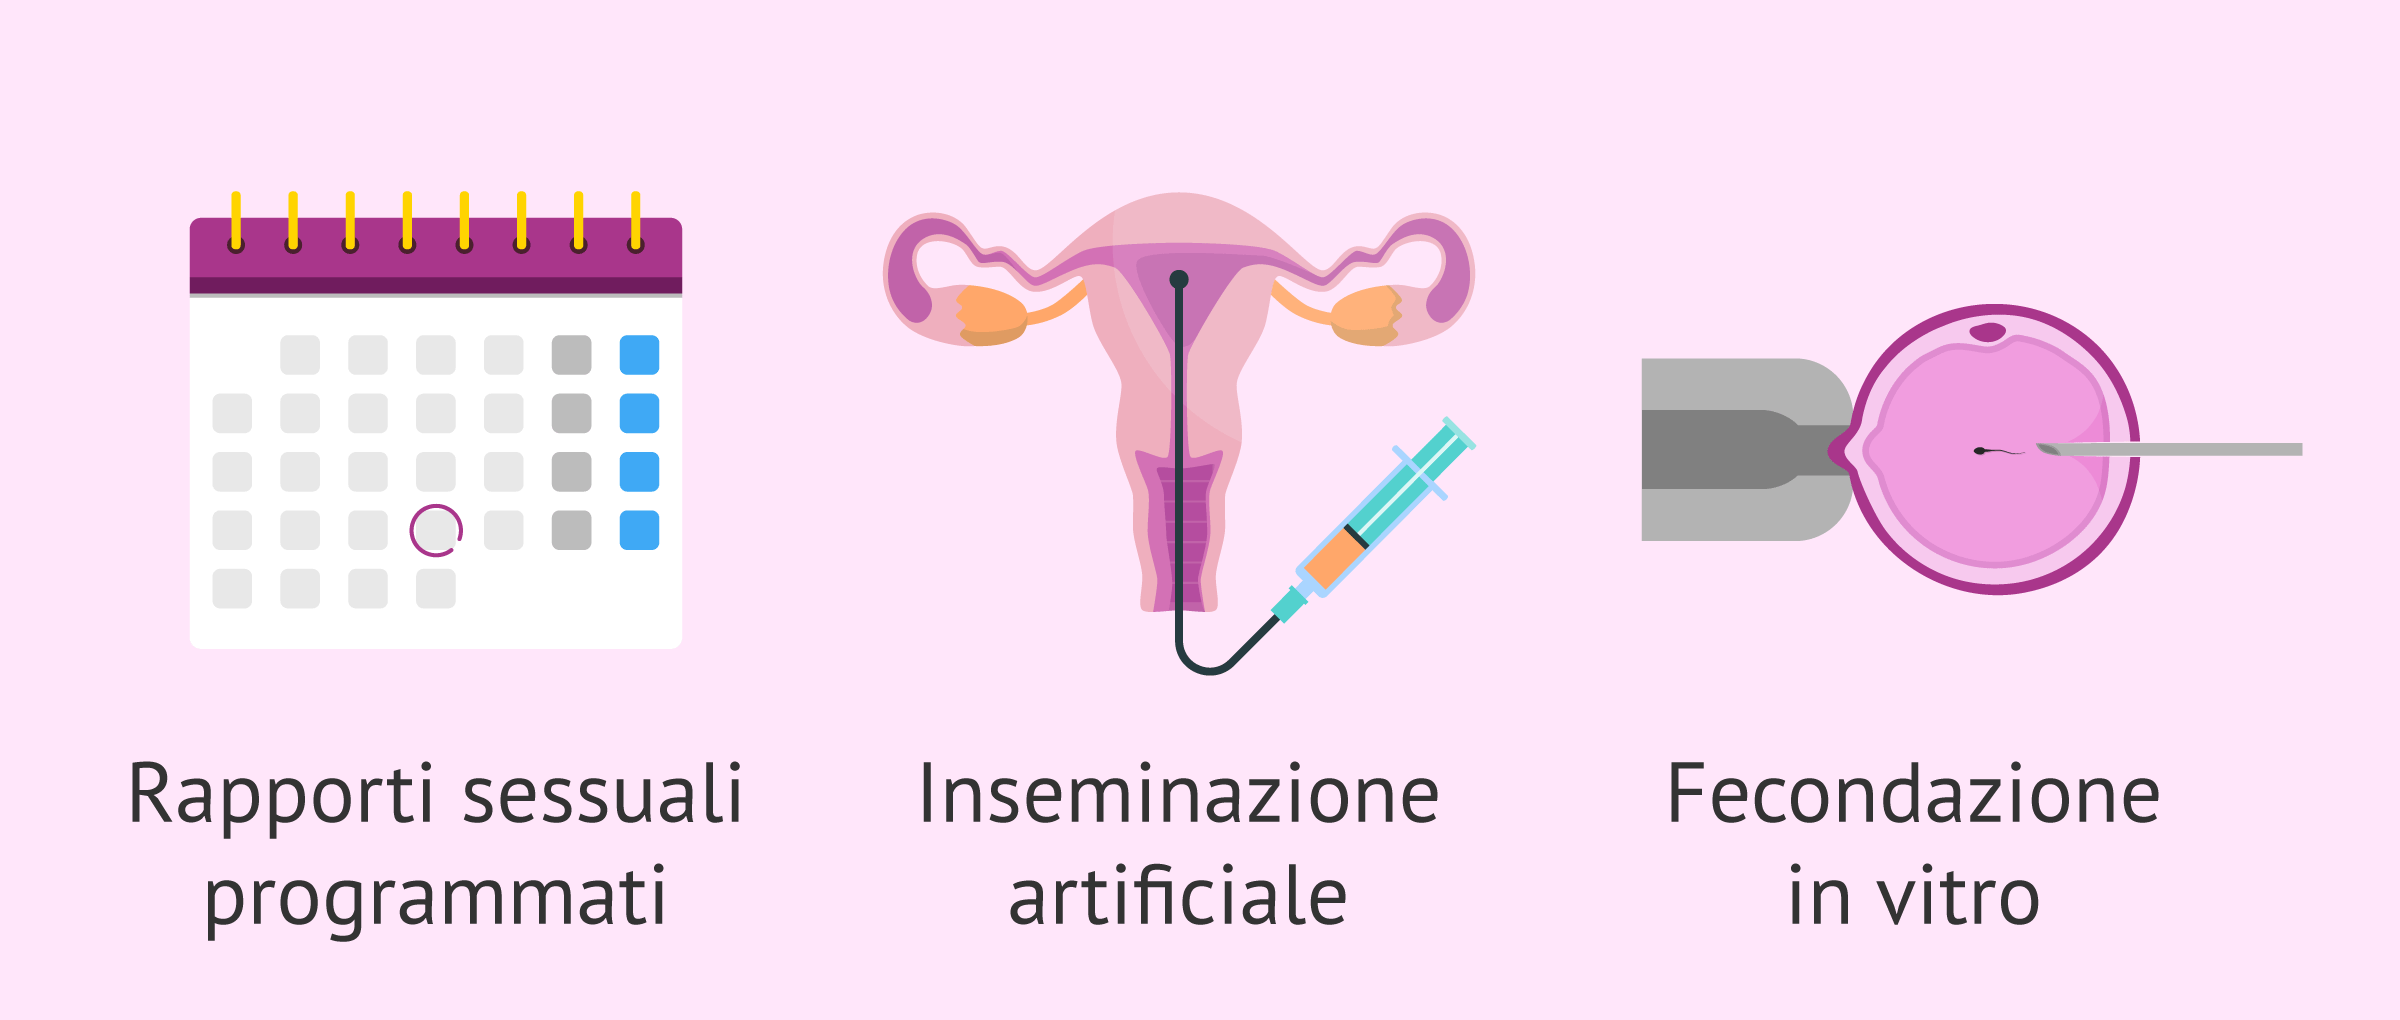 Trattamento dell'infertilità femminile